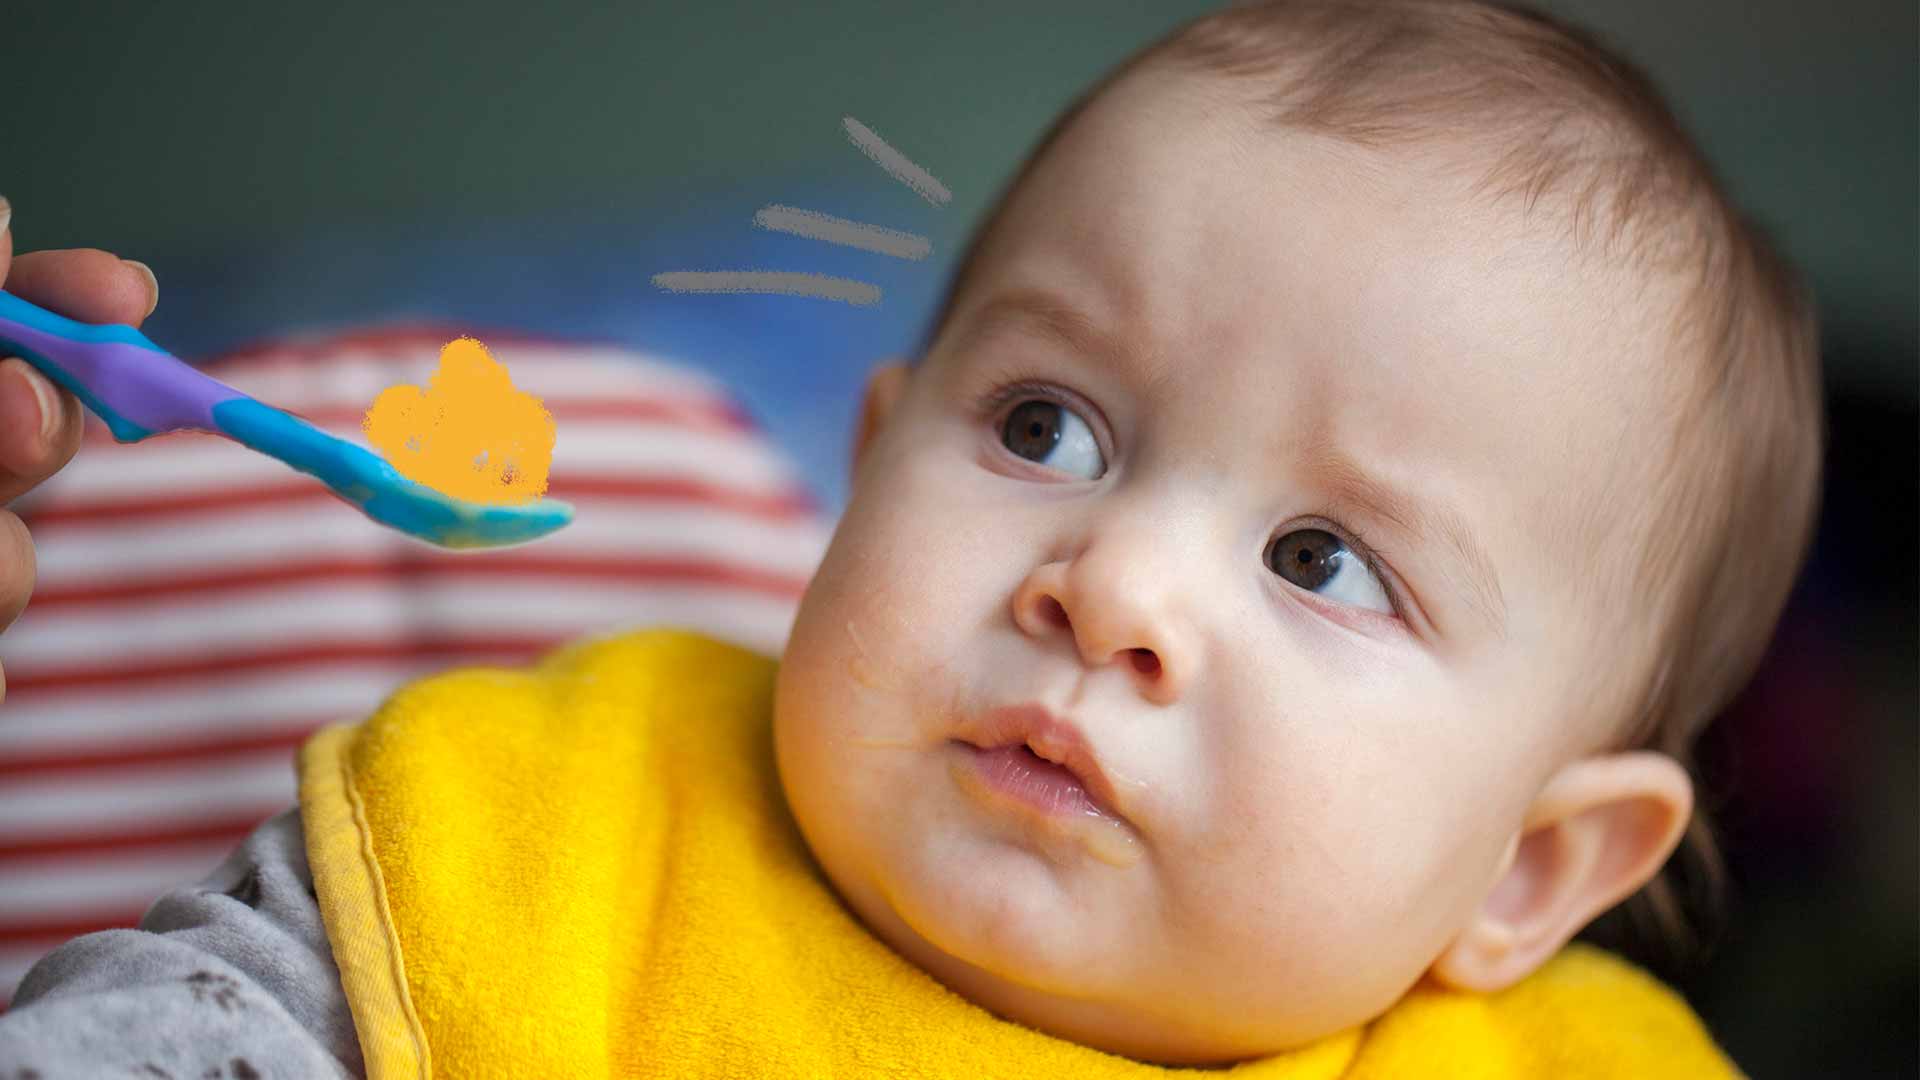 Um bebê olha desconfiado para uma colher de comida que está sendo oferecida.